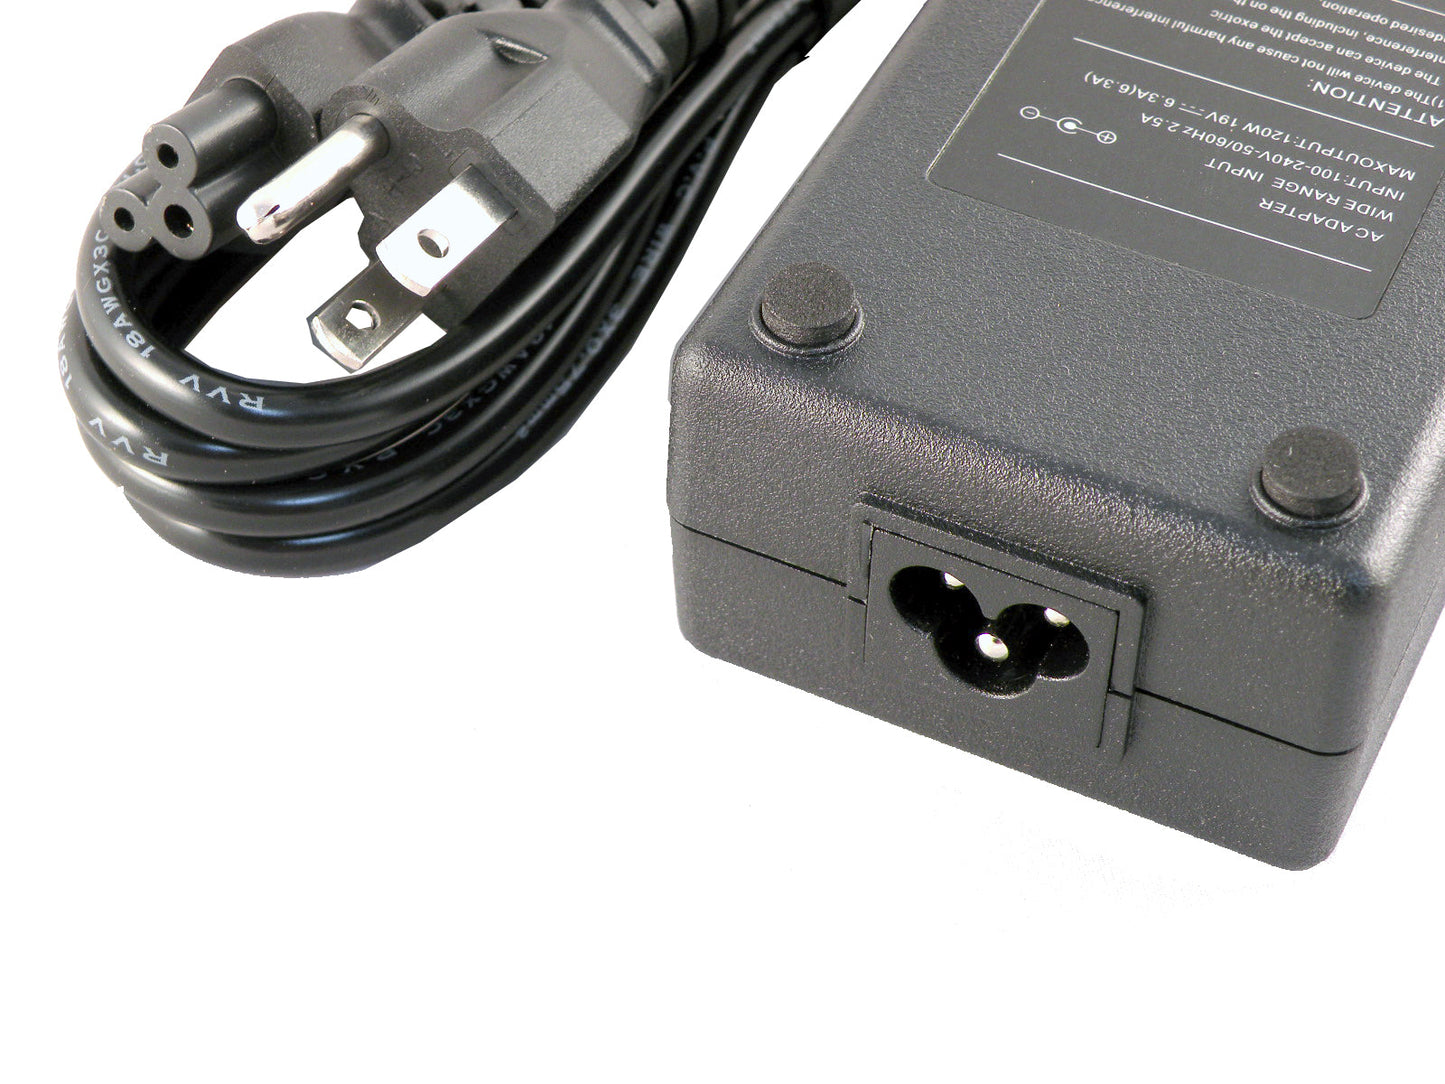 3-prong AC power cord plug